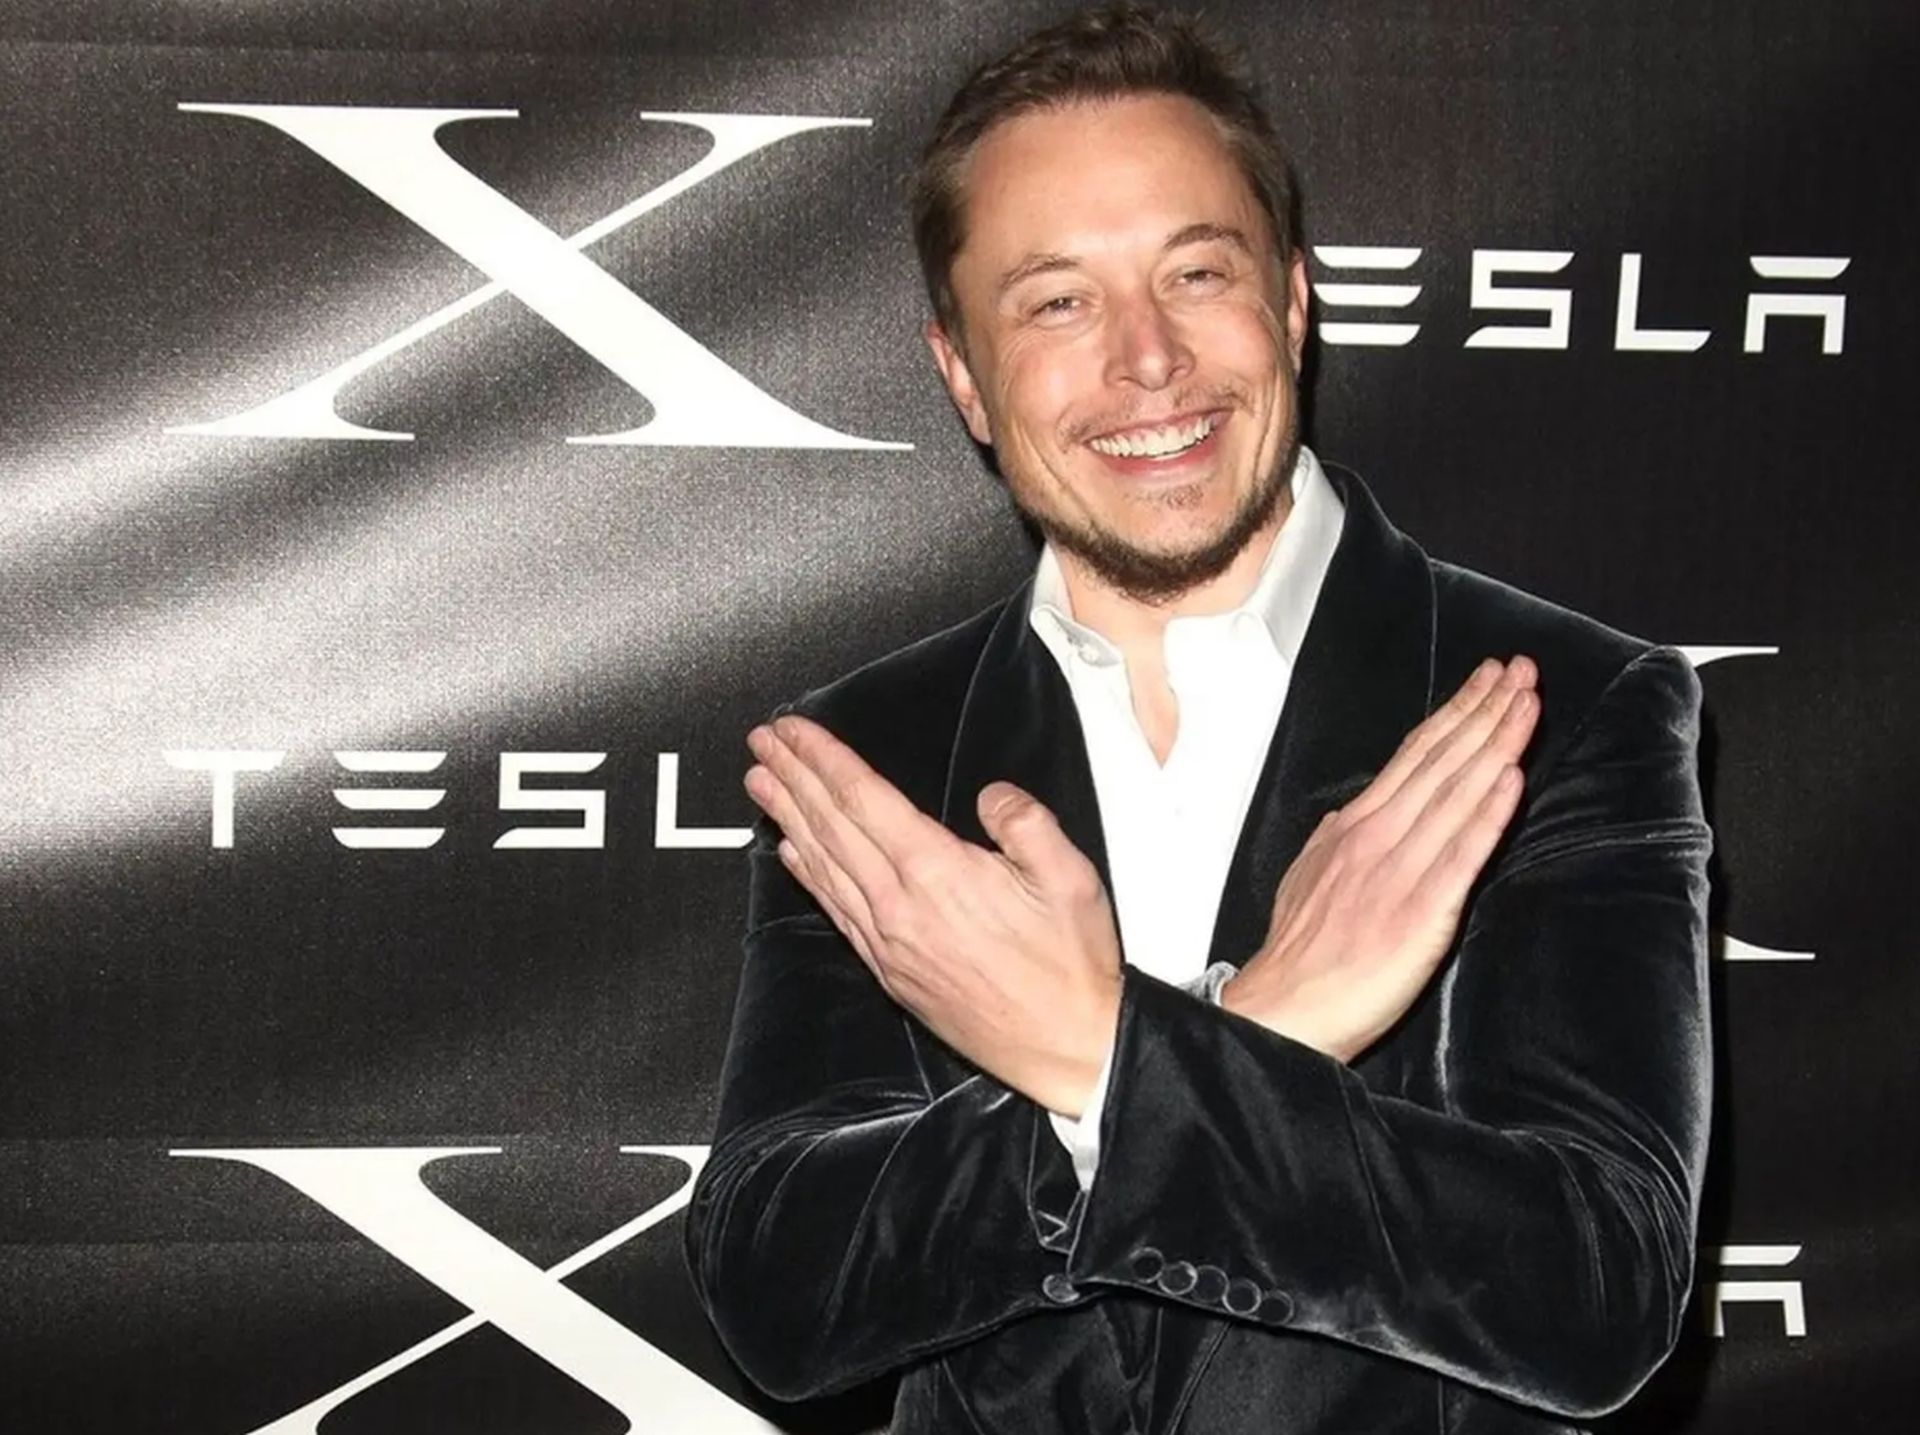 Elon Musk ukarany grzywną